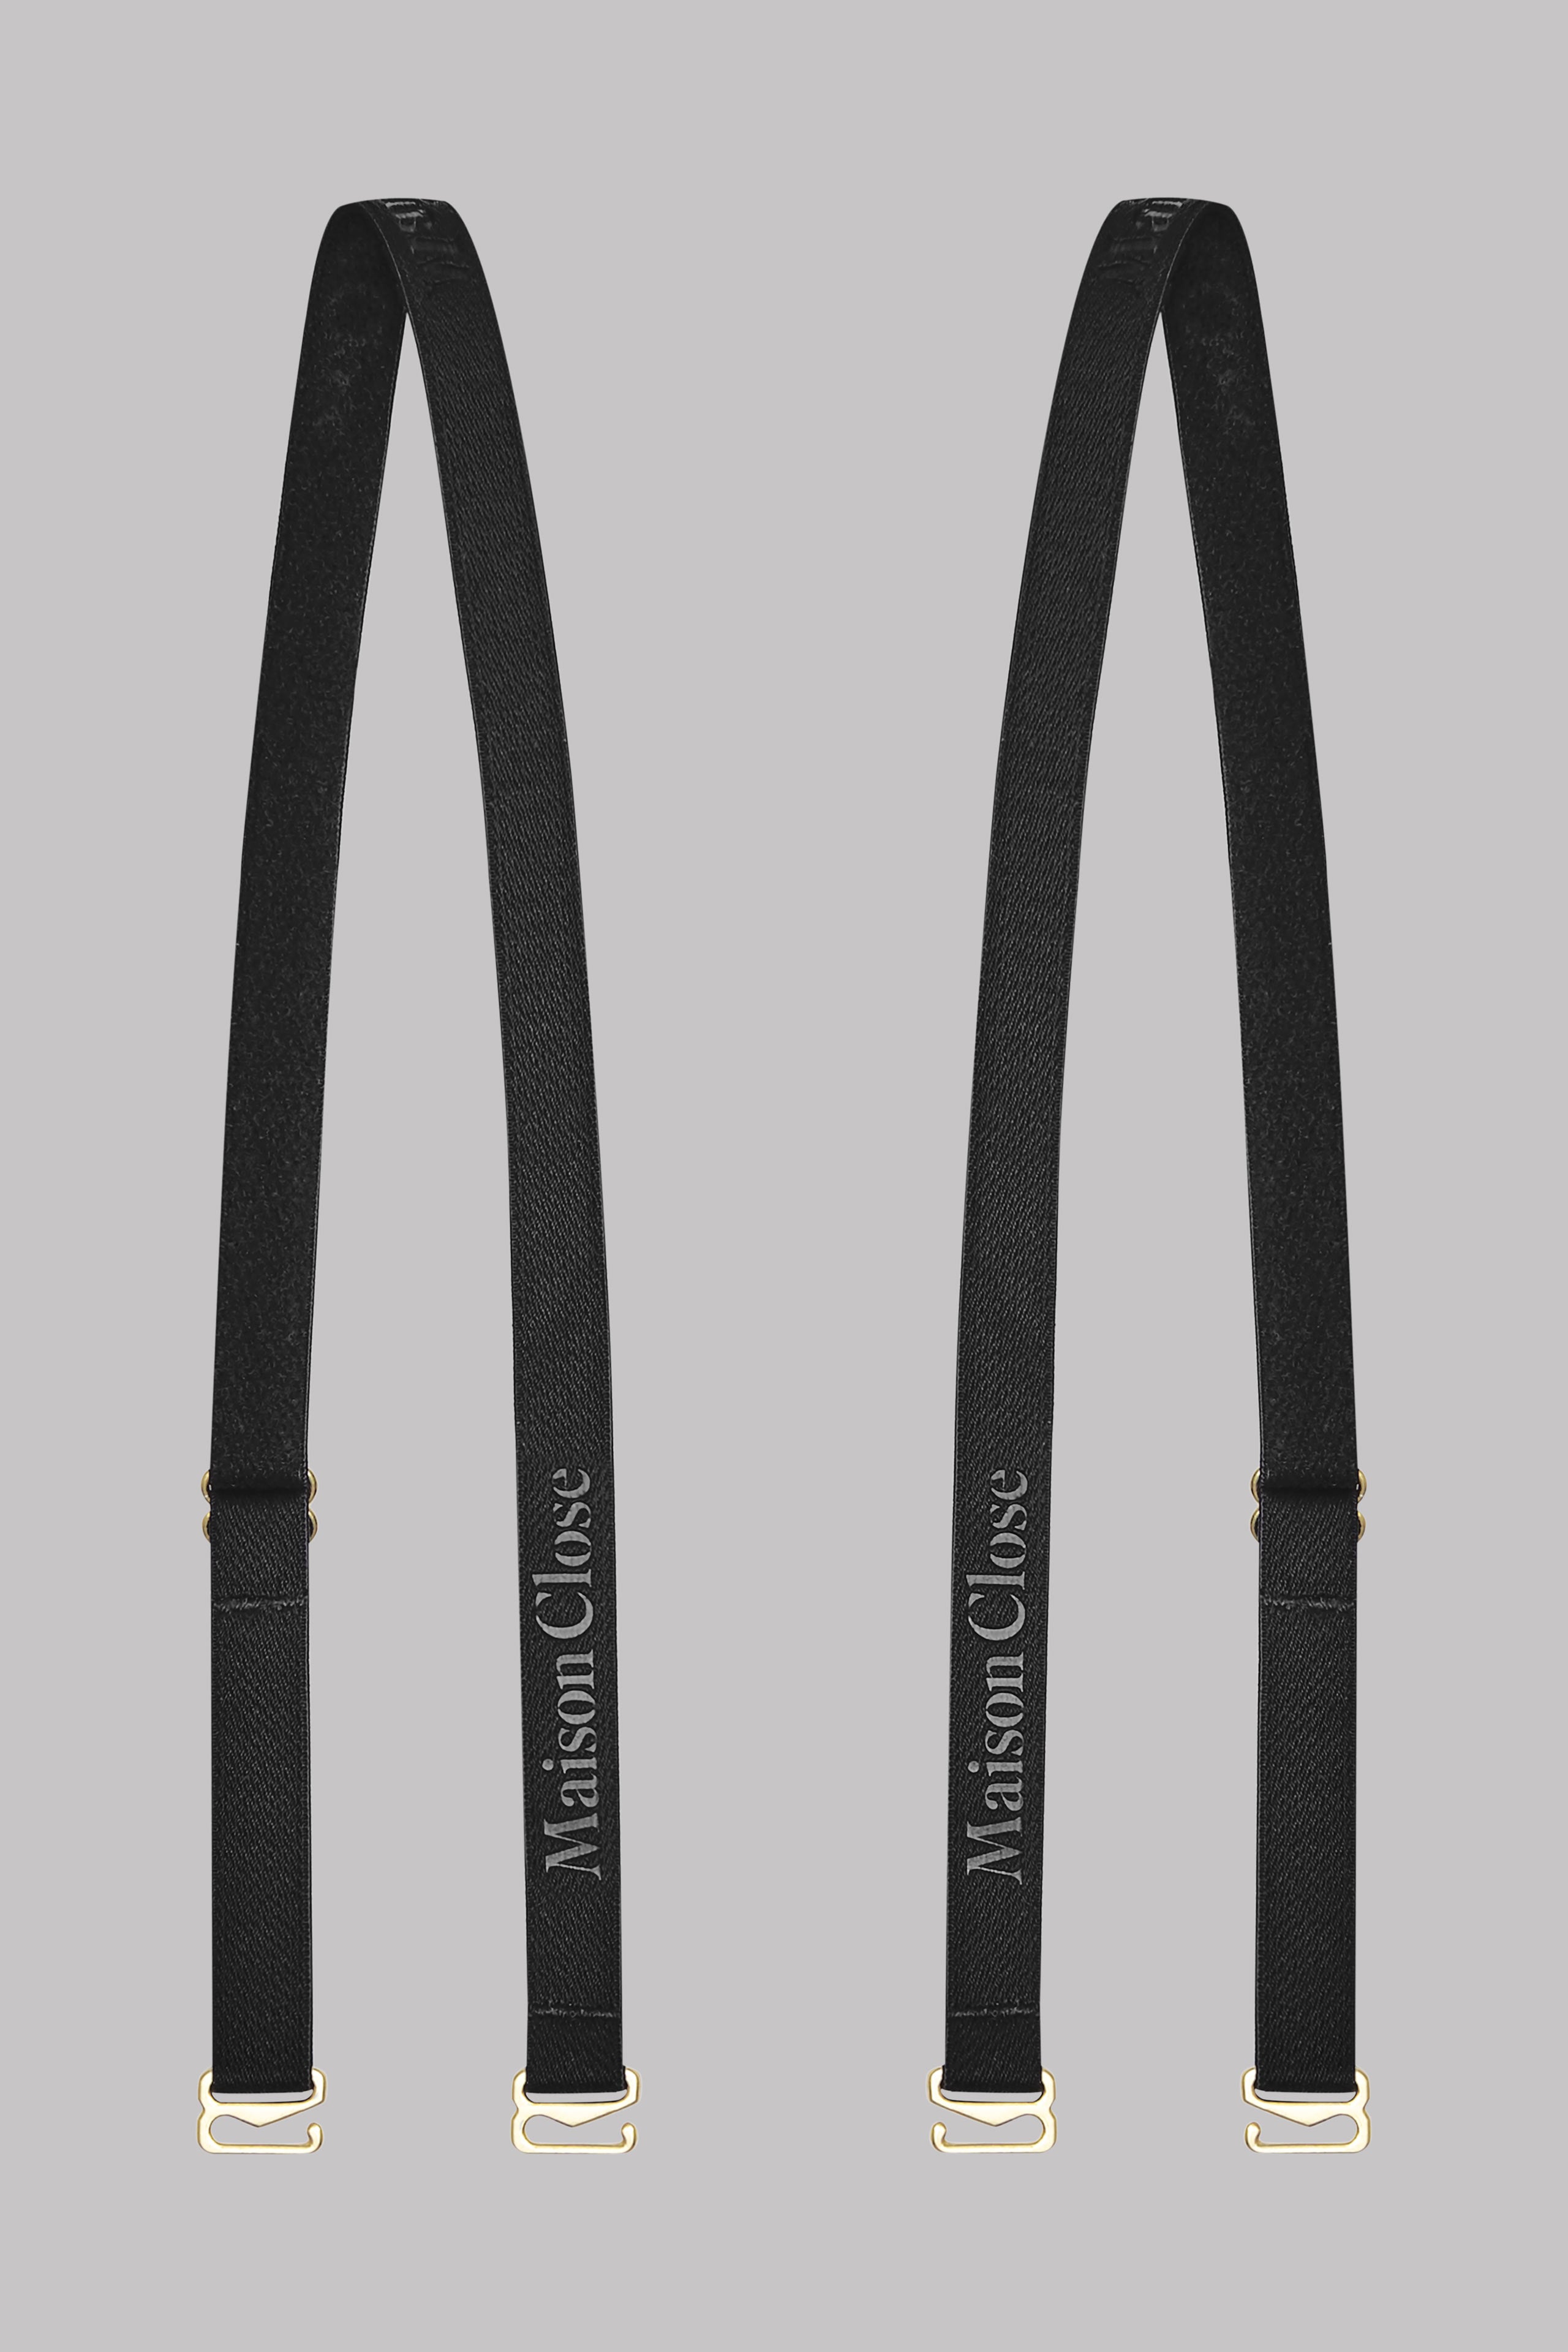 shoulder-straps-for-bra-signature-black-gold-1-pair-maison-close